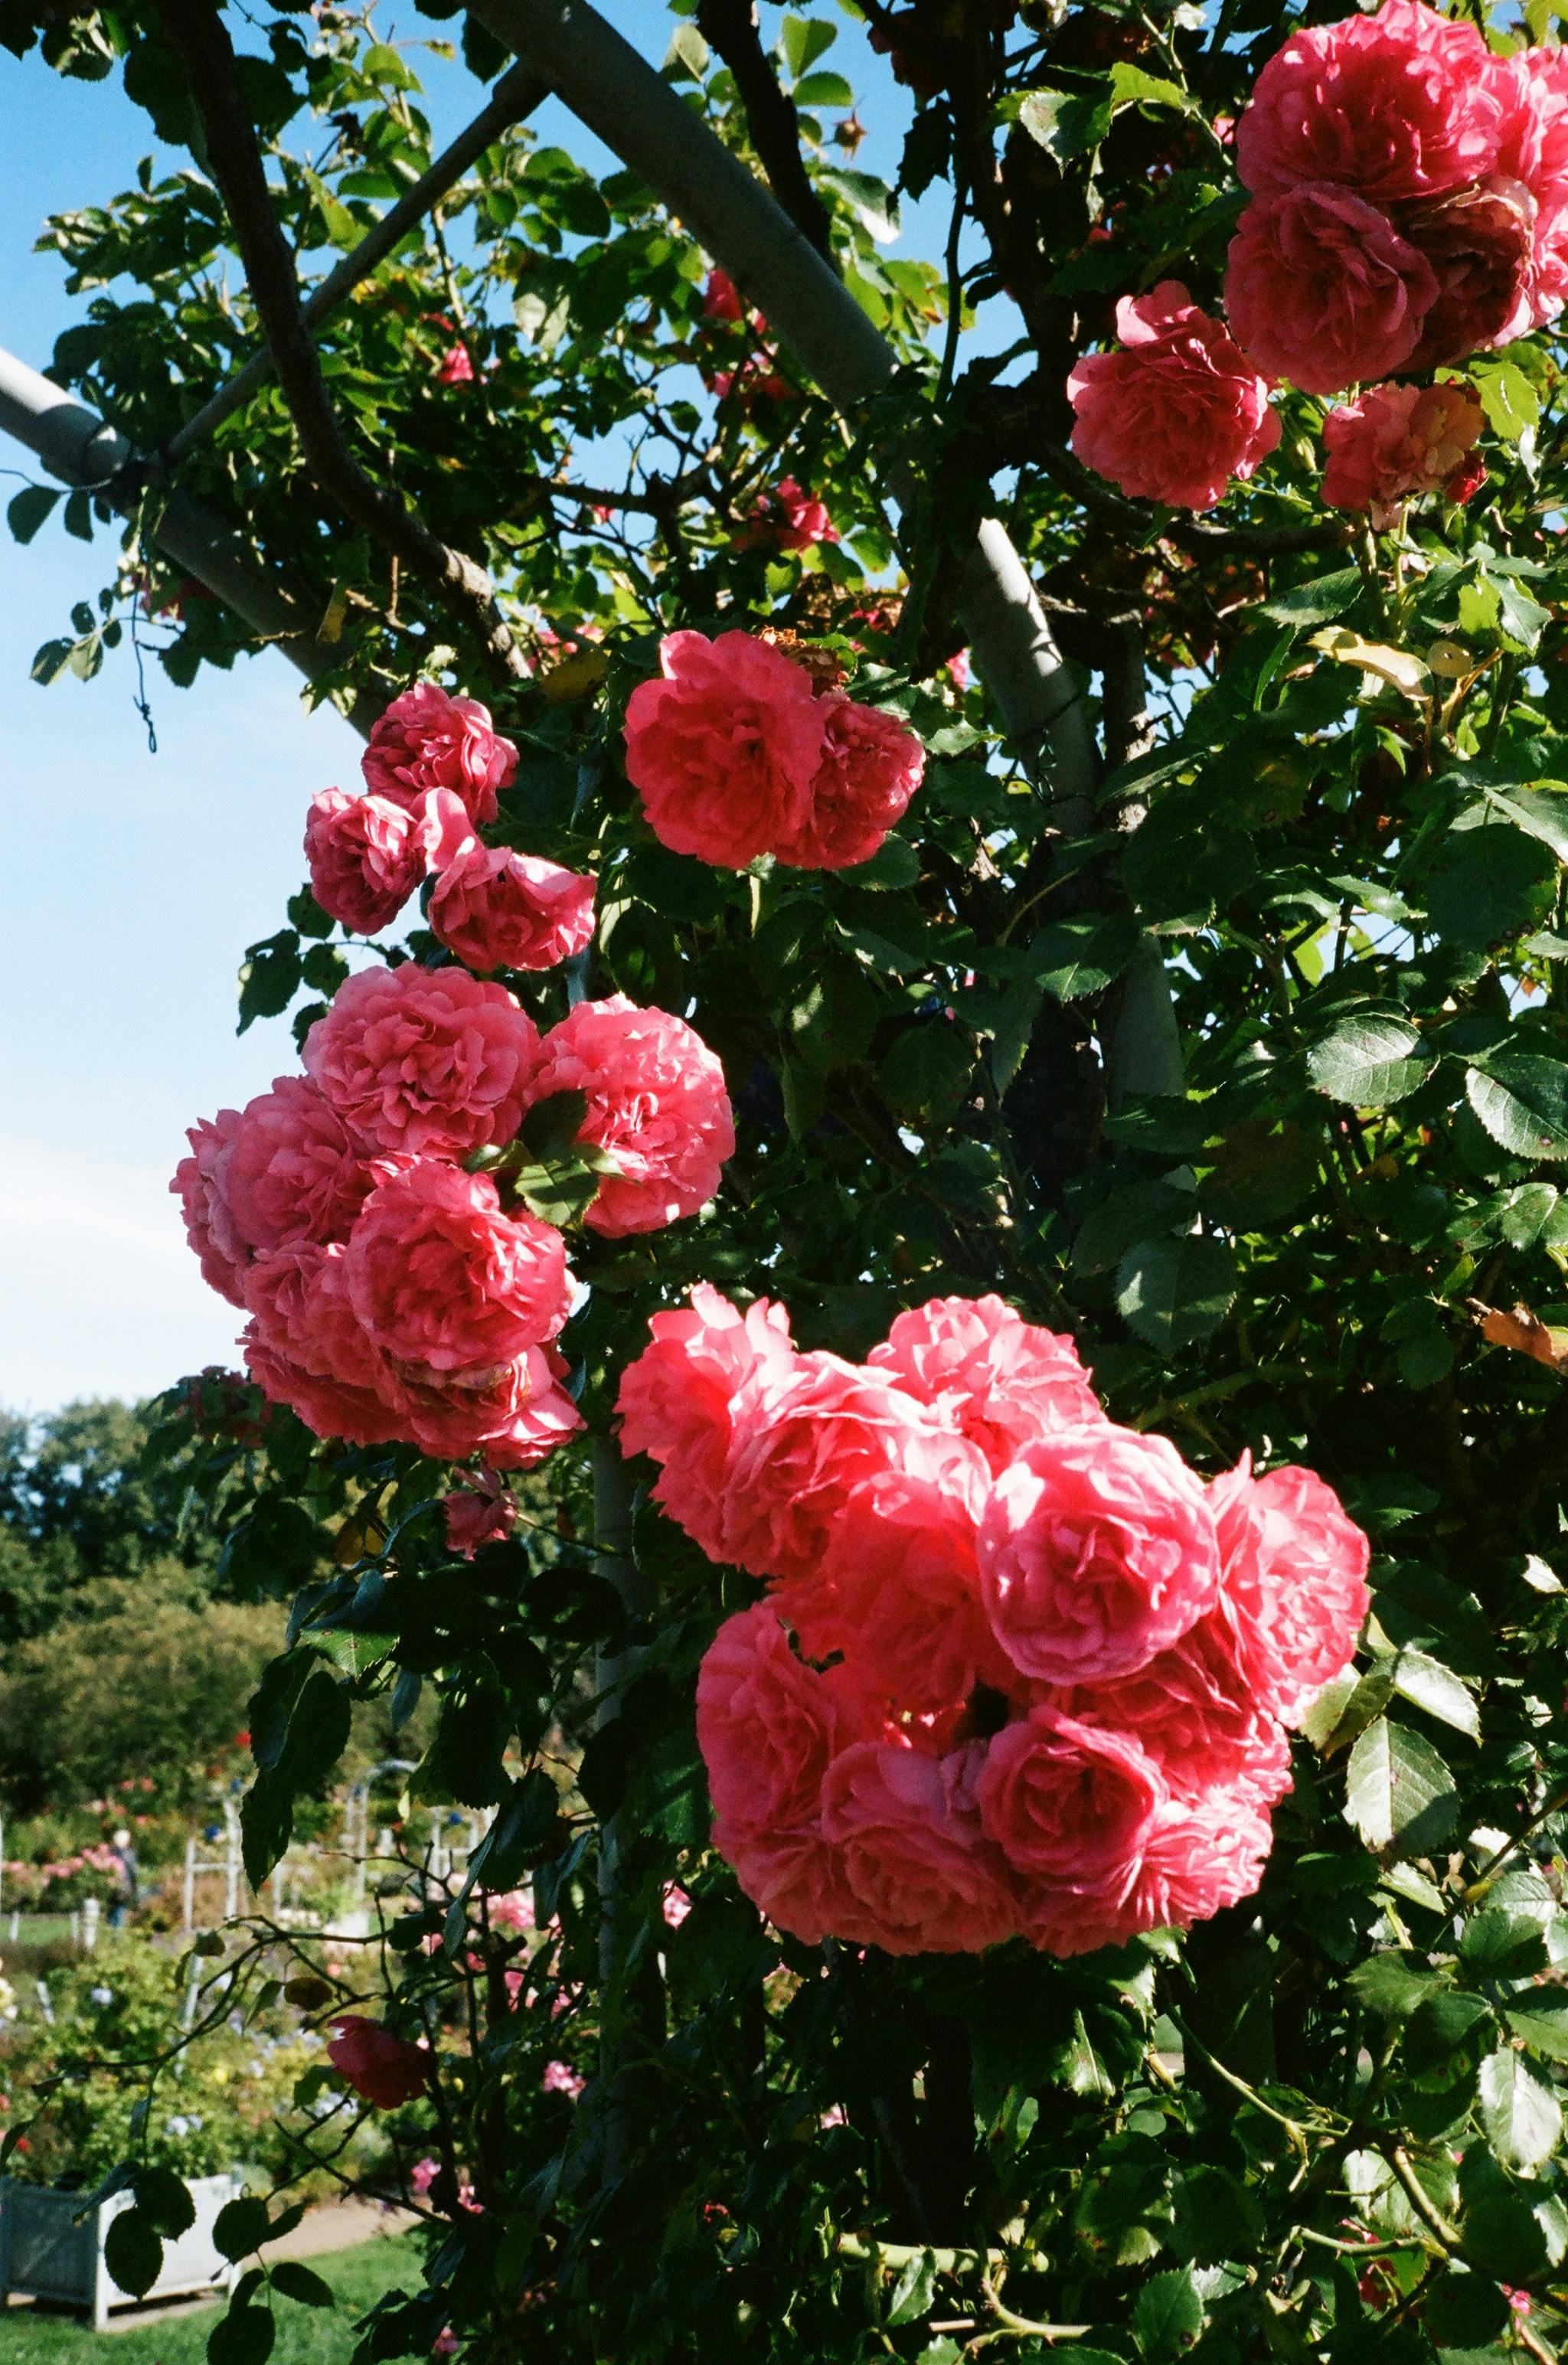 Rose Garden Images  Free Download on Freepik